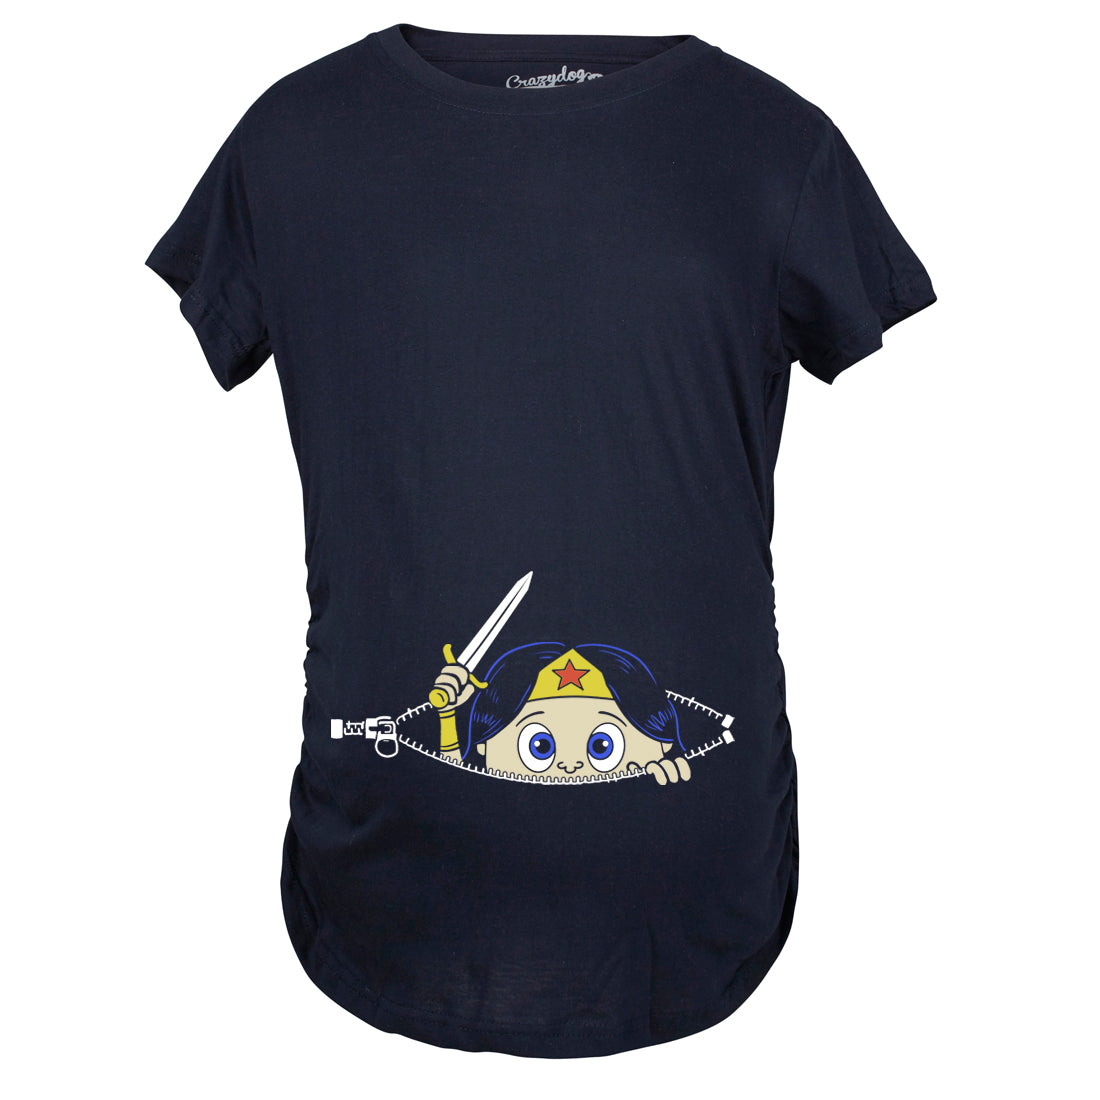 Funny Navy Peeking Captain Maternity T Shirt Nerdy Peeking Tee